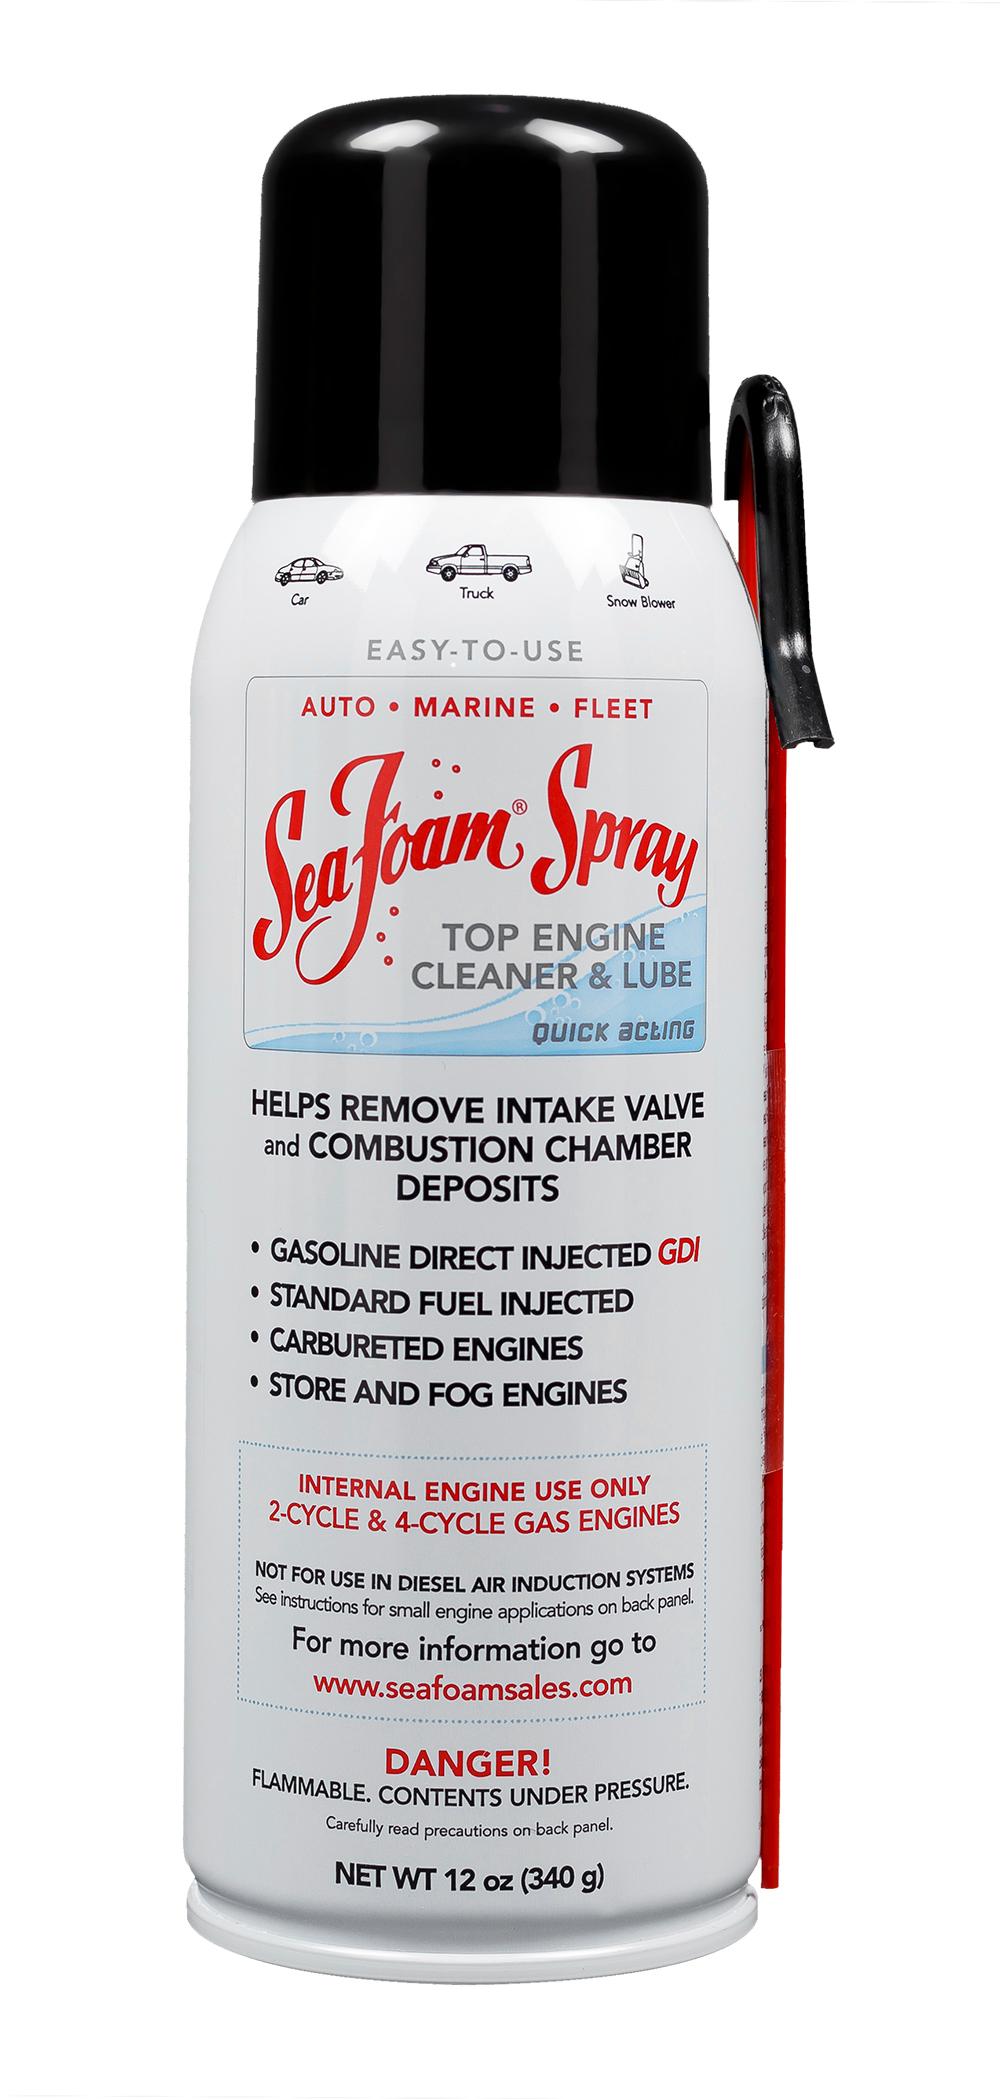 12 oz Spray Aerosol Engine Cleaner & Lube by Sea Foam at Fleet Farm